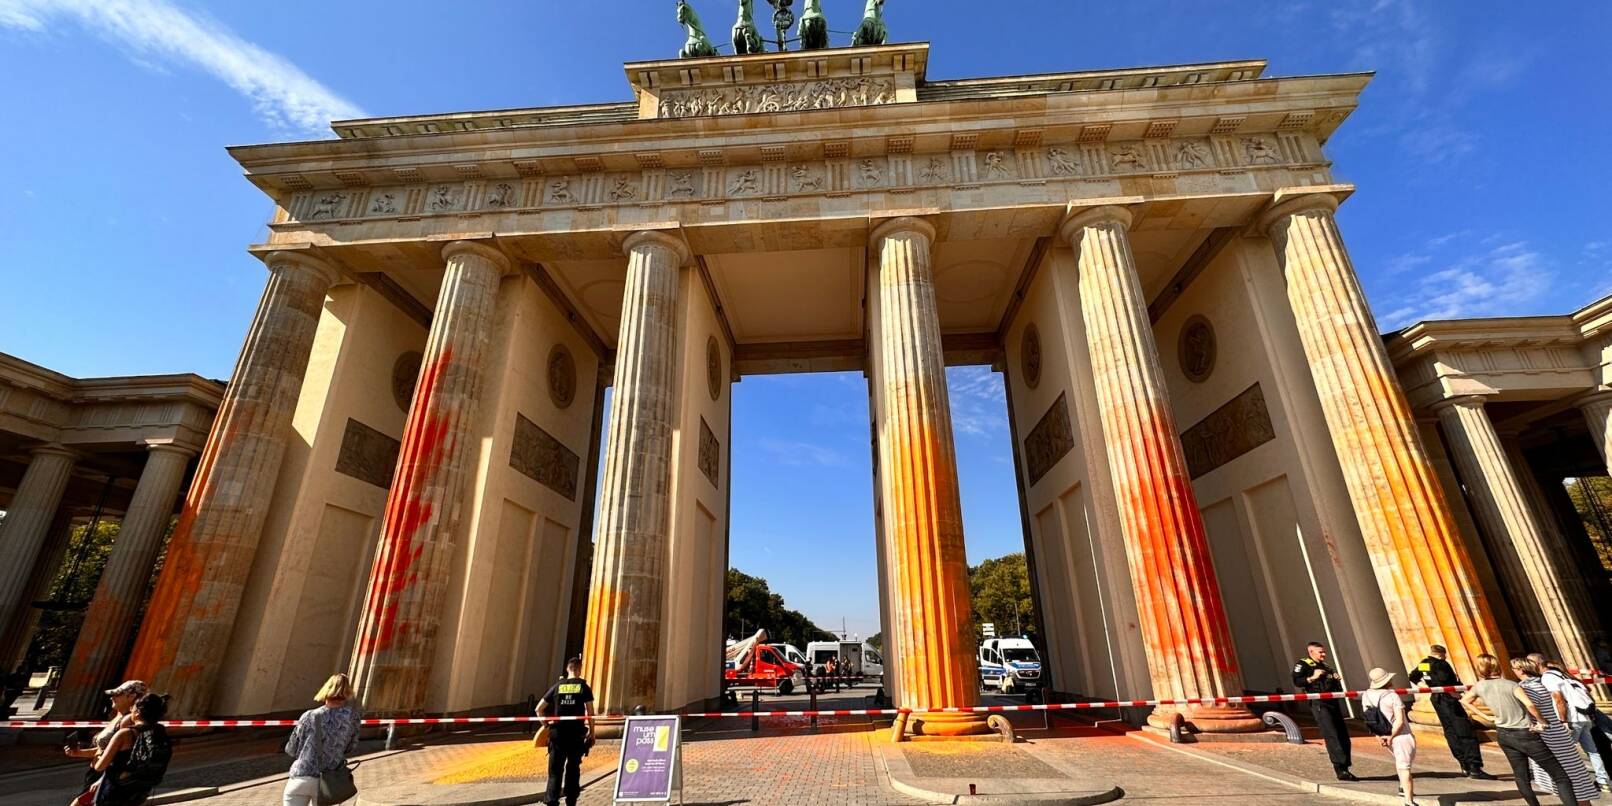 Mitglieder der Klimaschutzgruppe Letzte Generation hatten am 17. September alle Säulen des Brandenburger Tors mit oranger Farbe besprüht.